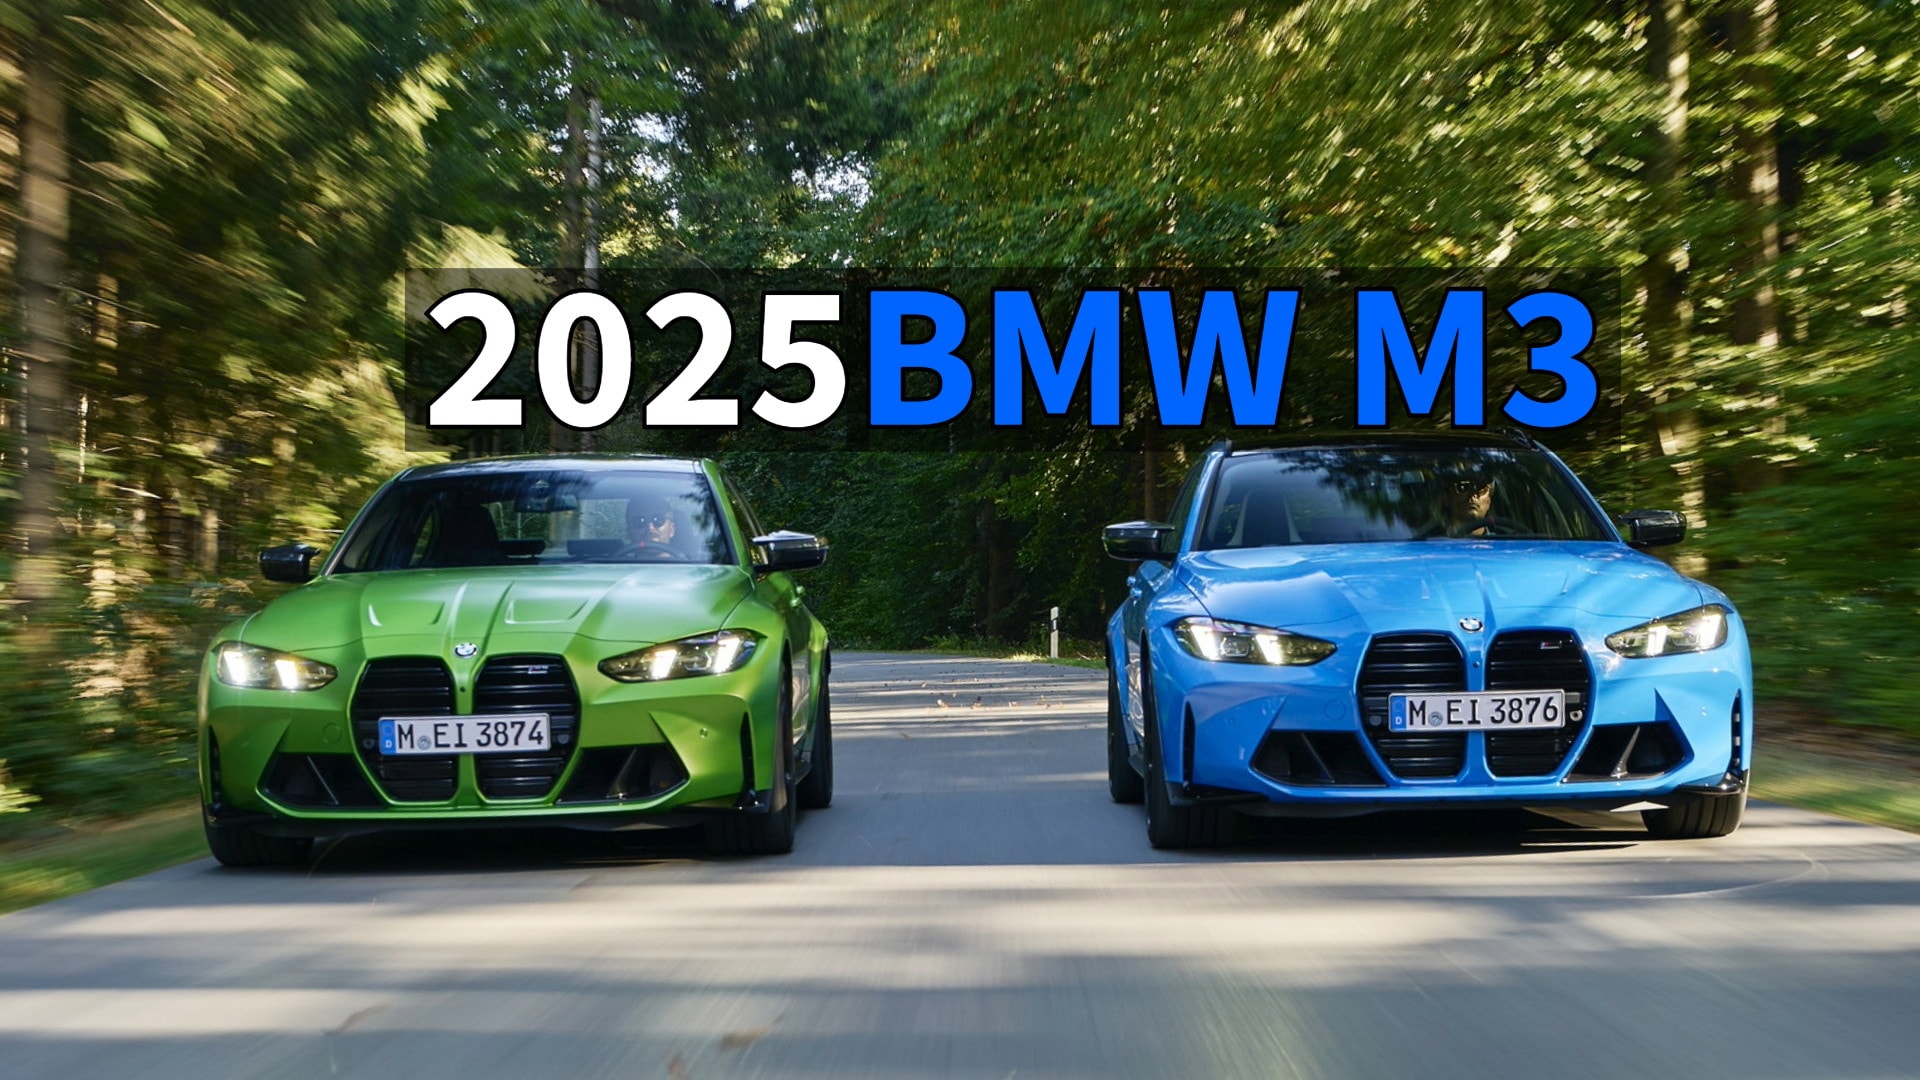 Cena BMW M3 Limuzyna 2025 zaczyna się w Australii od 163 700 dolarów